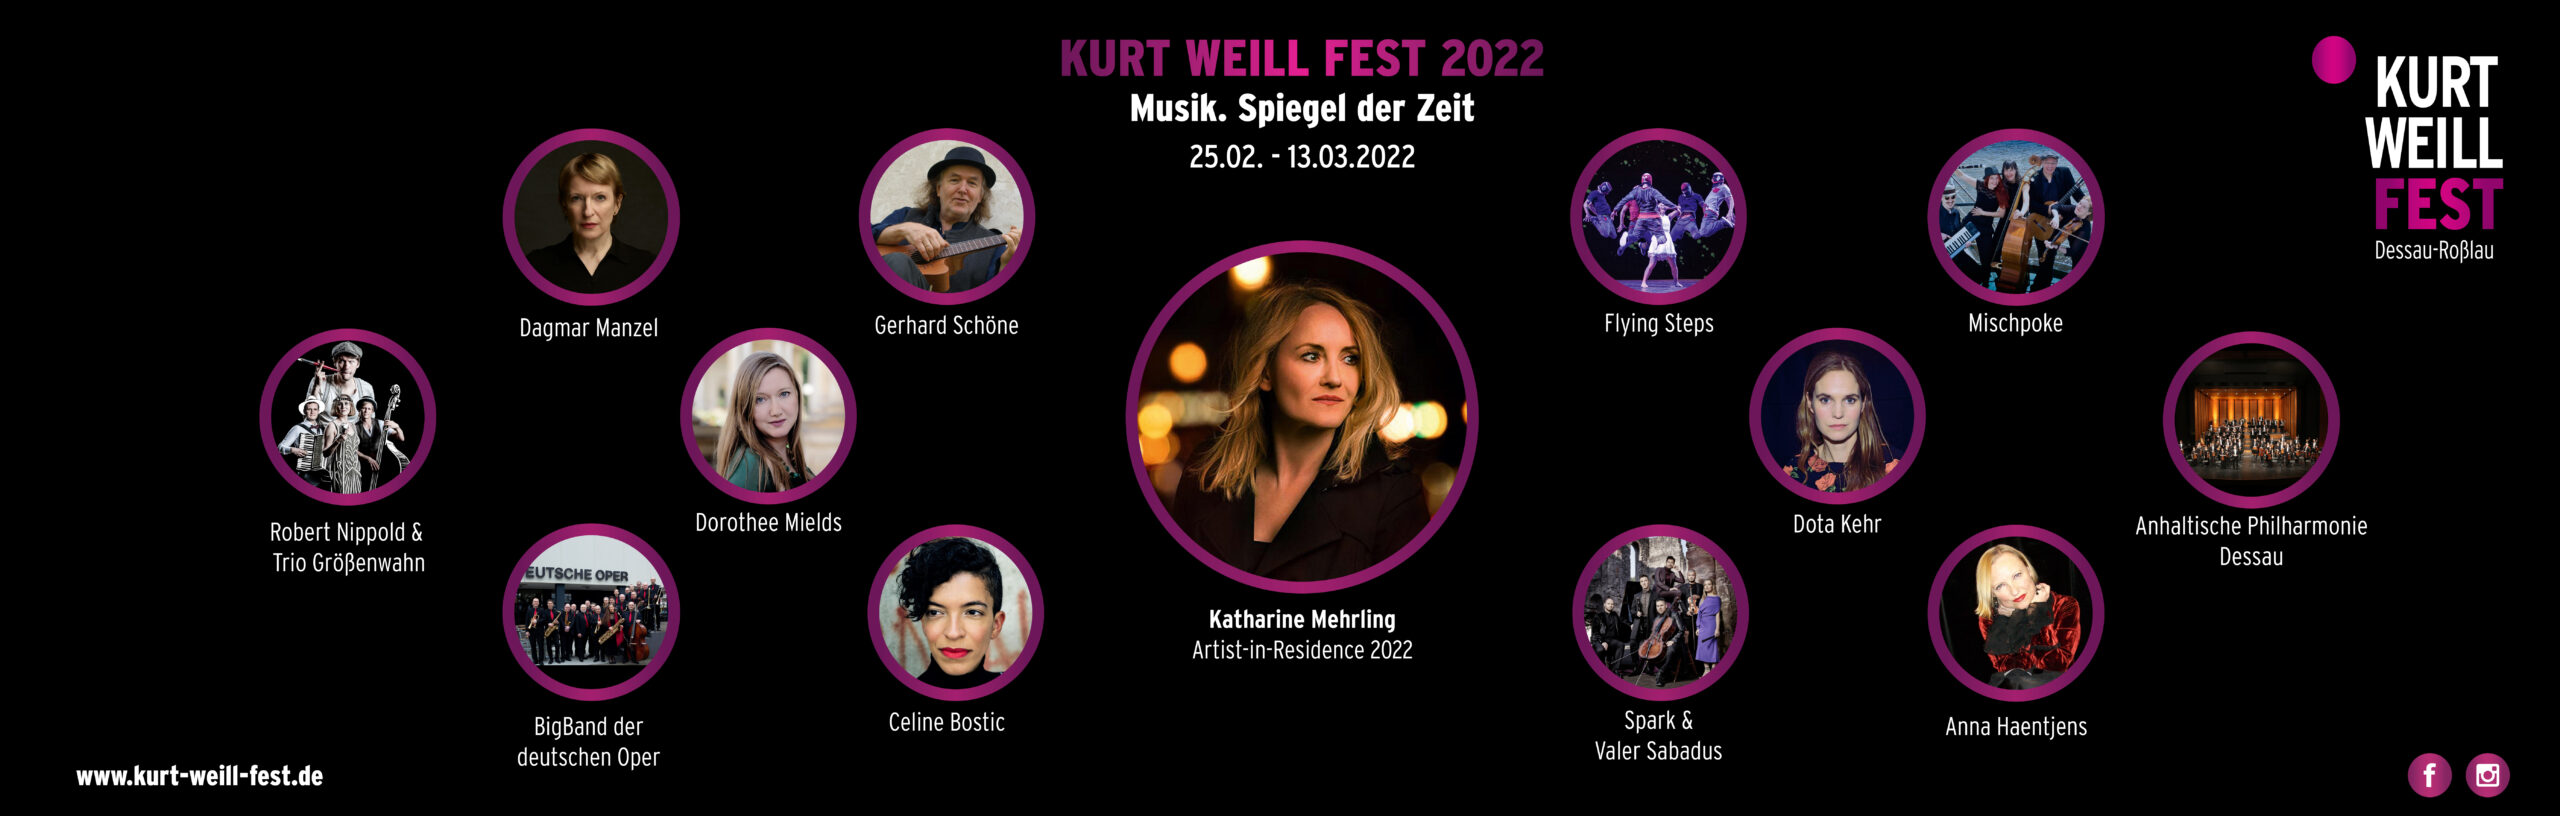 Flyer des Kurt Weill Festes 2022